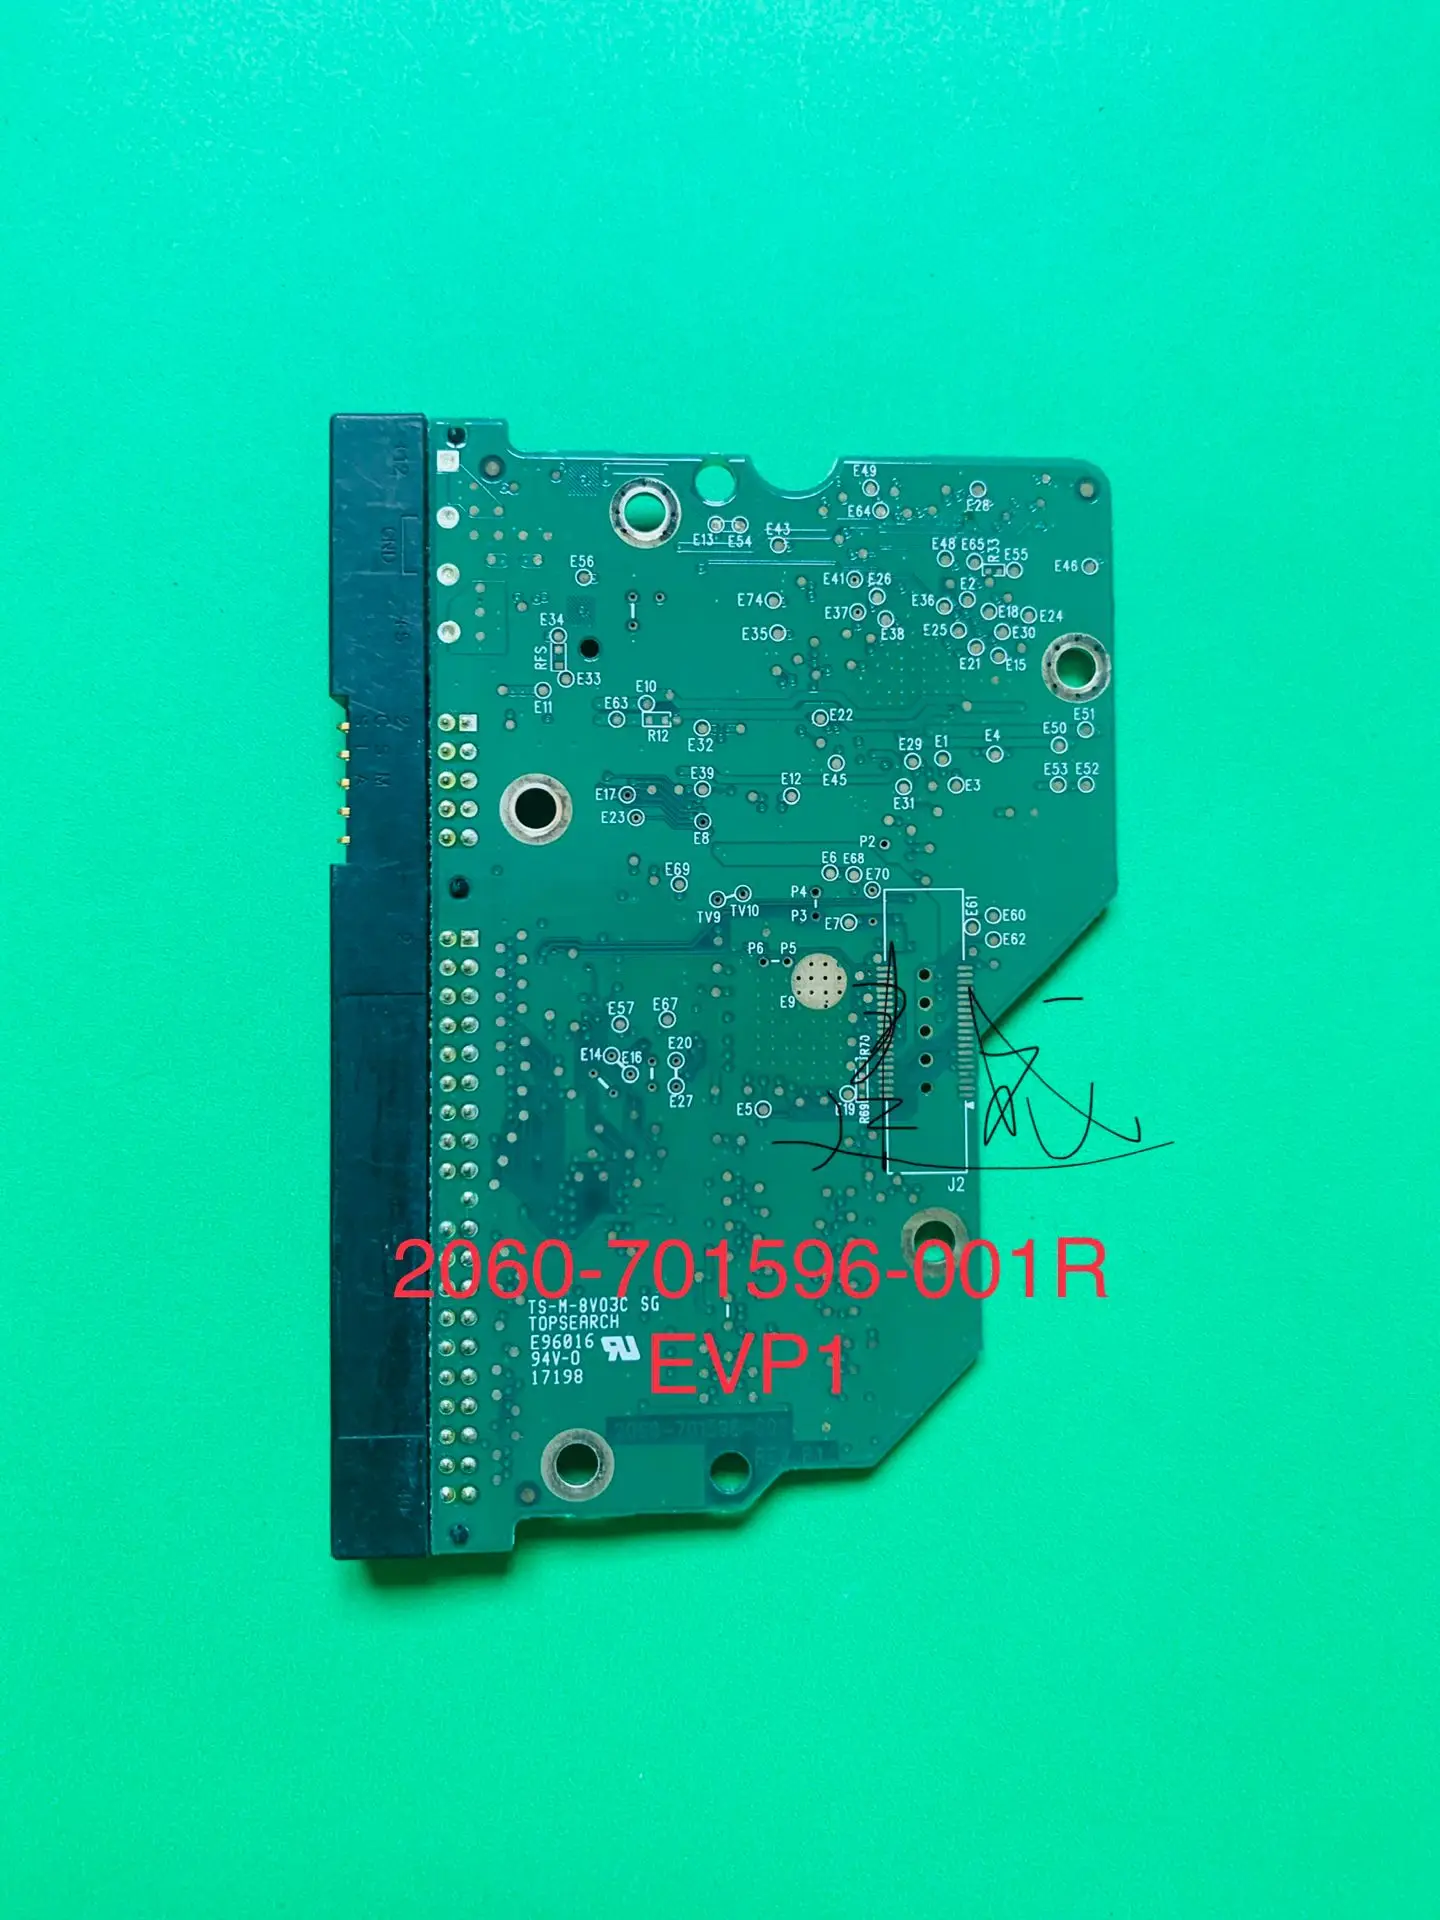 Western Digital Disco Duro placa de circuito/2060-701596-001 REV P1 , 2060-701596-001 REV A / 2061-701596-A00 , 2061-701596-500